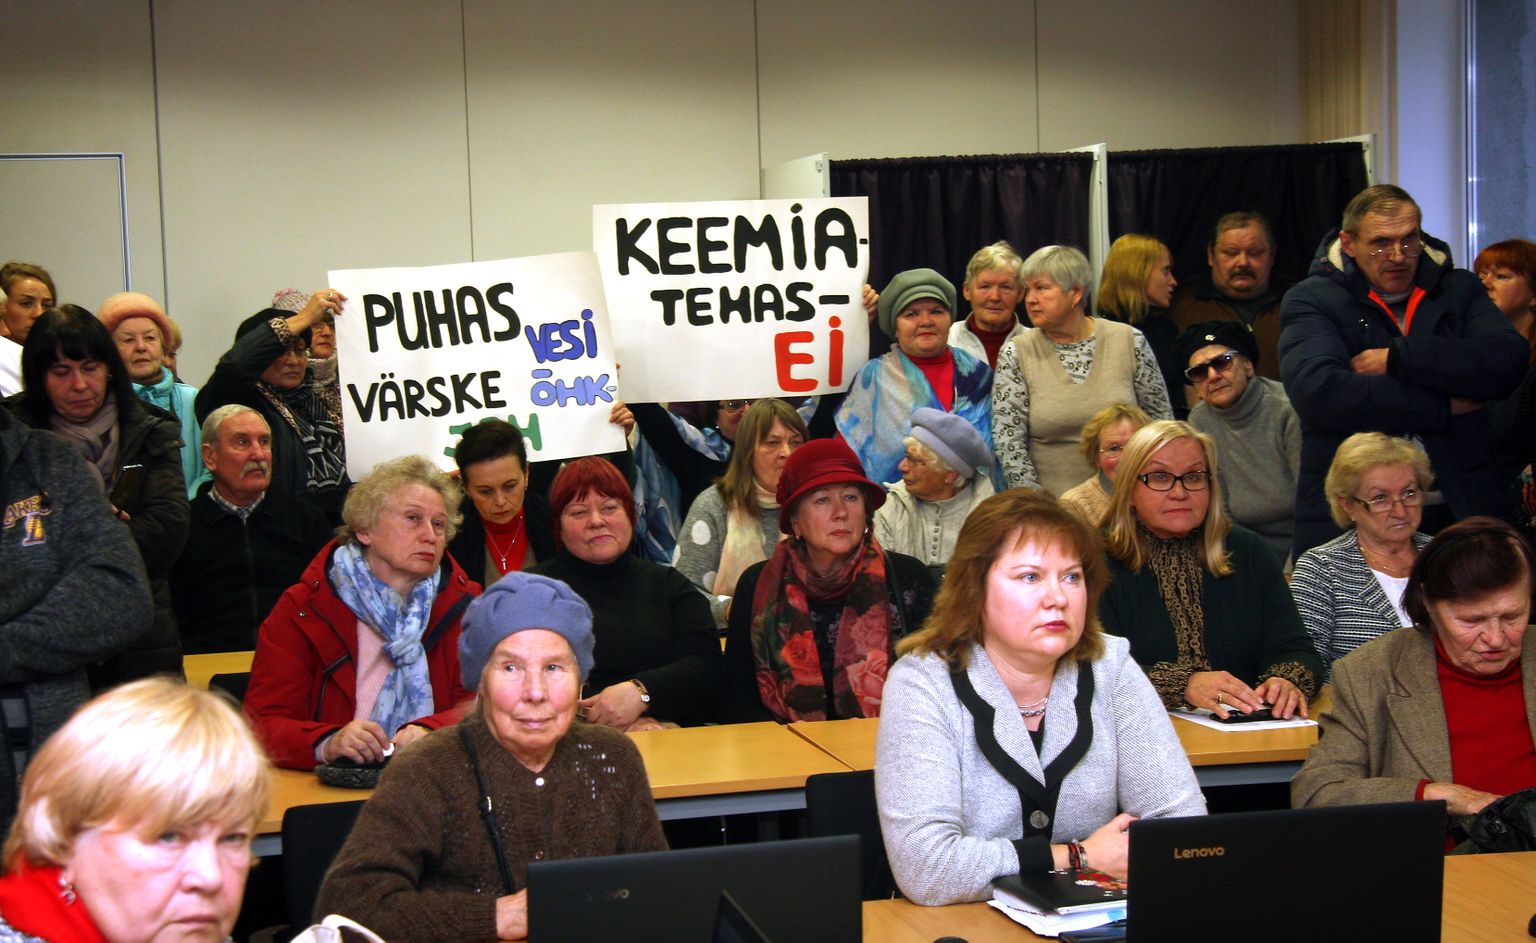 Кохтла-Ярвеское горсобрание в октябре 2019 года под бдительным взором горожан не приняло решения касательно завода масел.